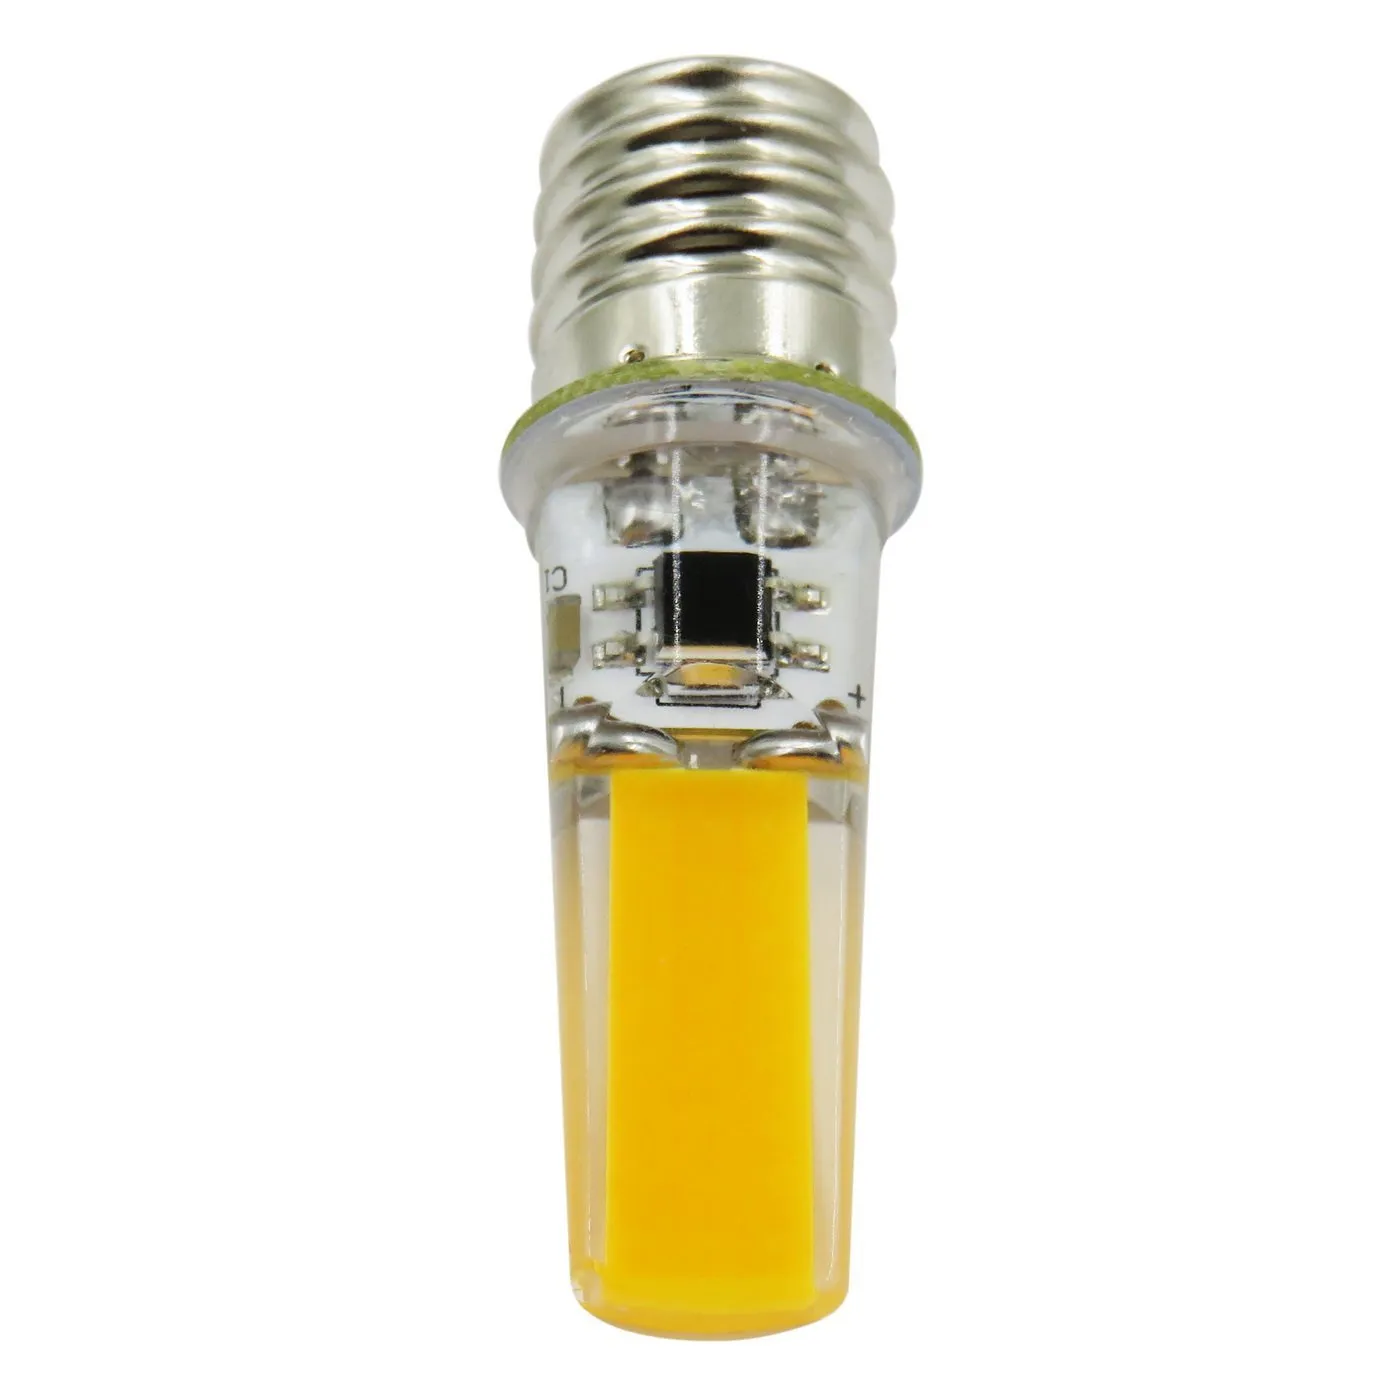 Acheter Ampoule LED halogène en cristal de Silicone, G9 3W 5W 7W, variable,  110V 220V